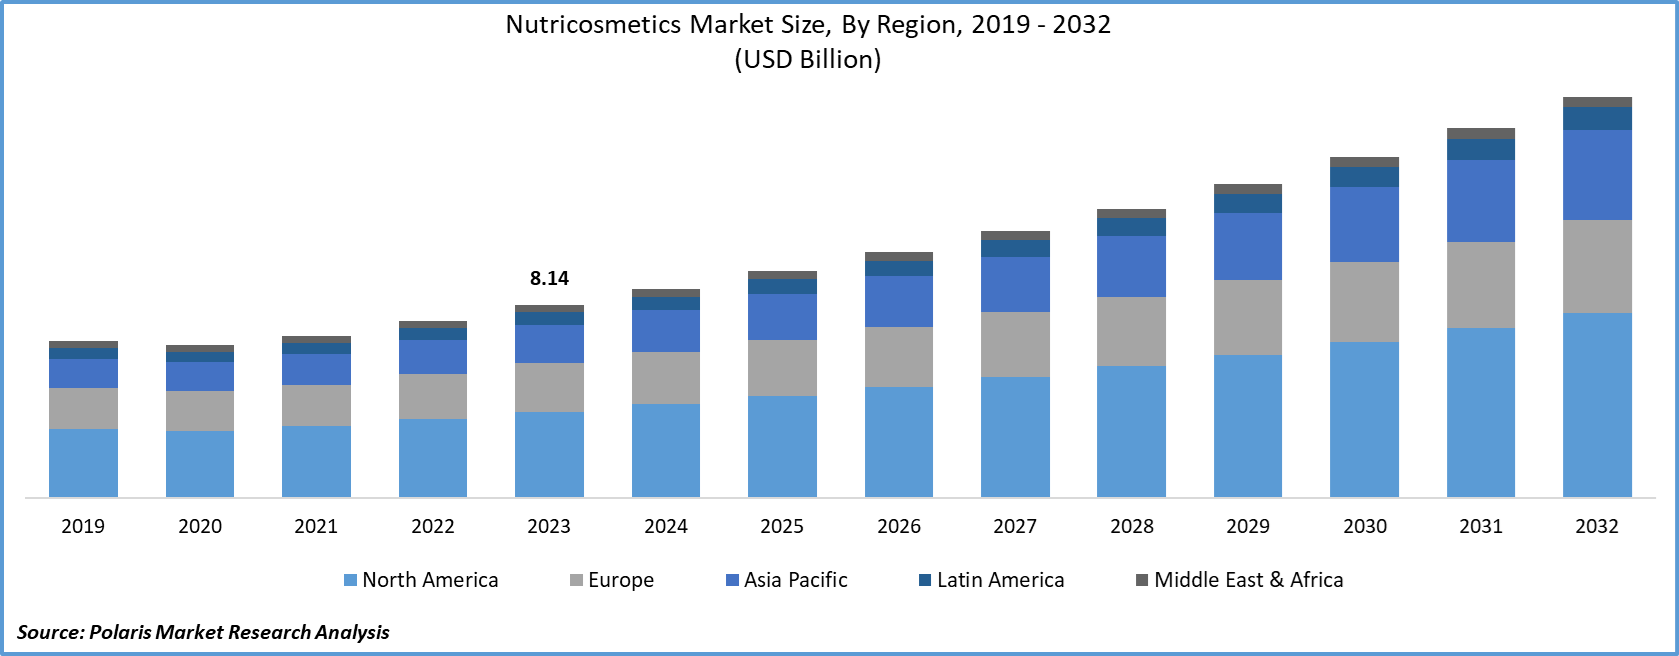 Nutricosmetics Market Size